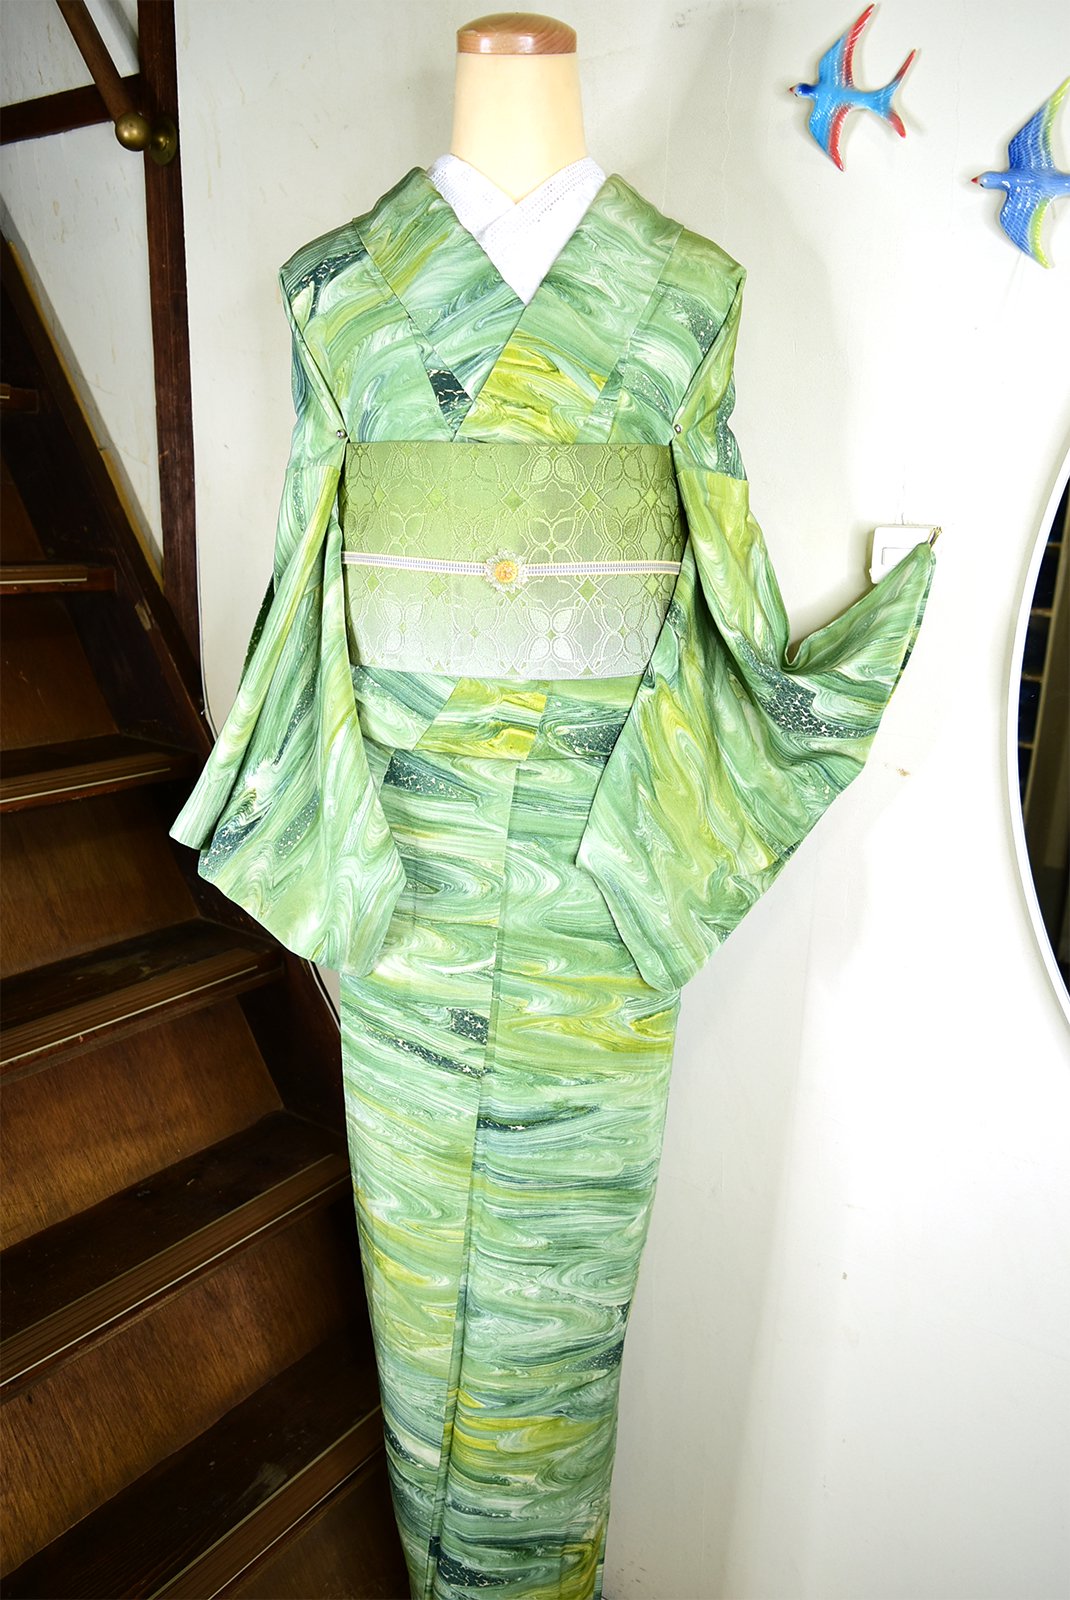 翠緑色墨流しのようなマーブル模様モダンな正絹単着物 - アンティーク 